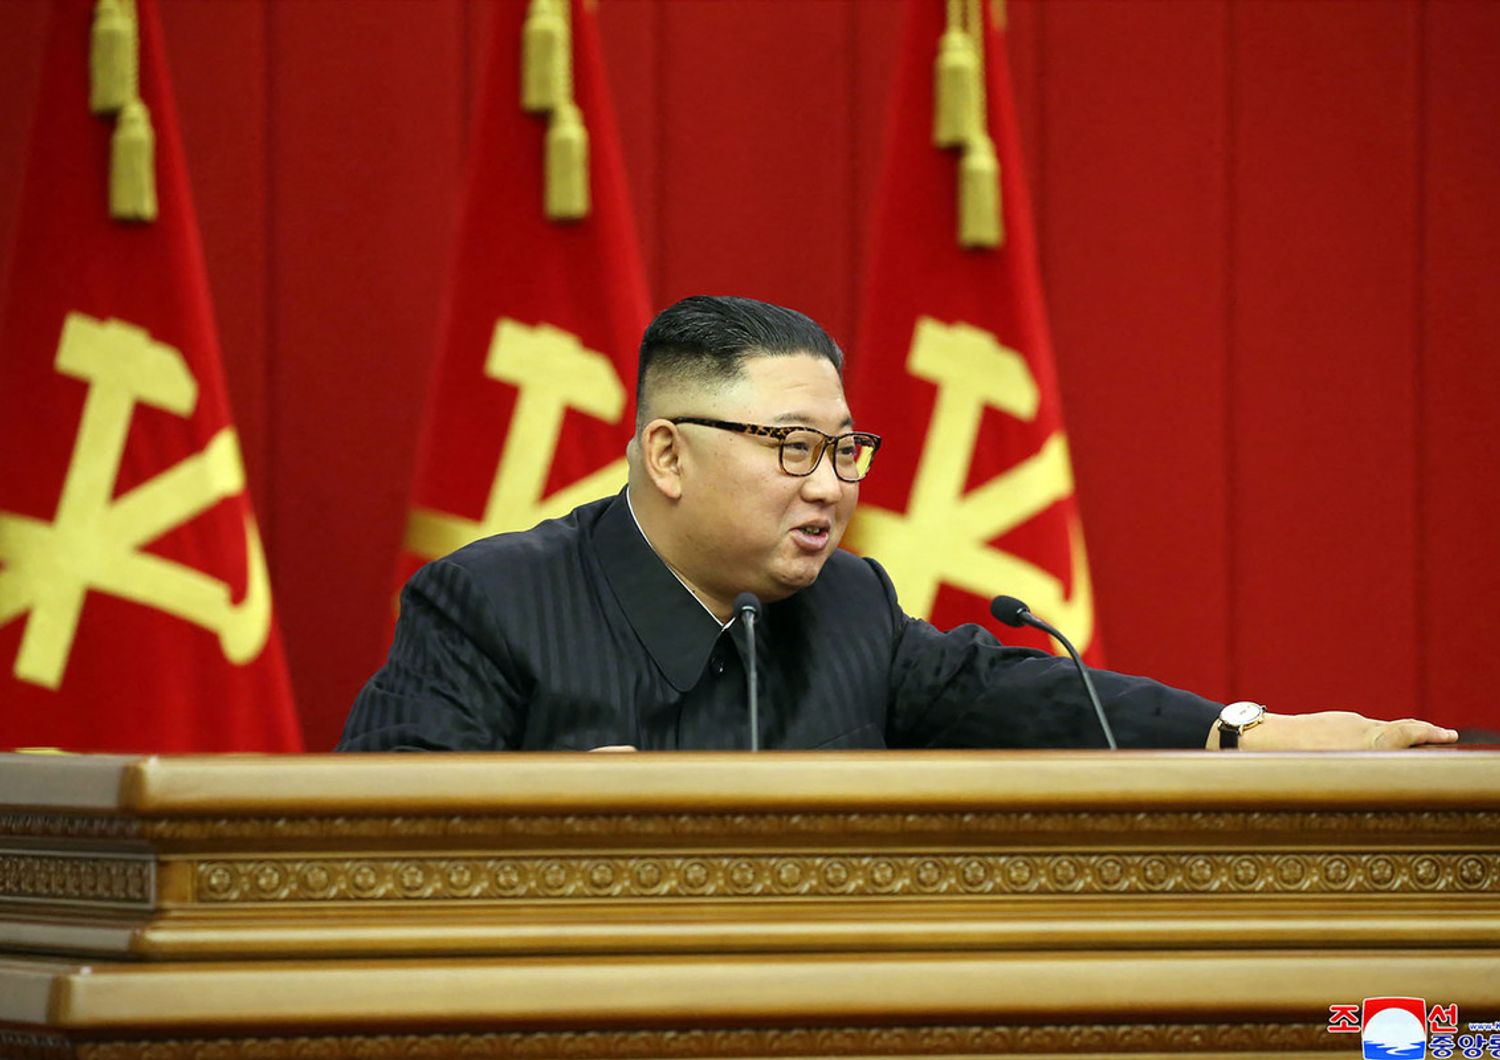 Il leader nord-coreano Kim Jong-Un